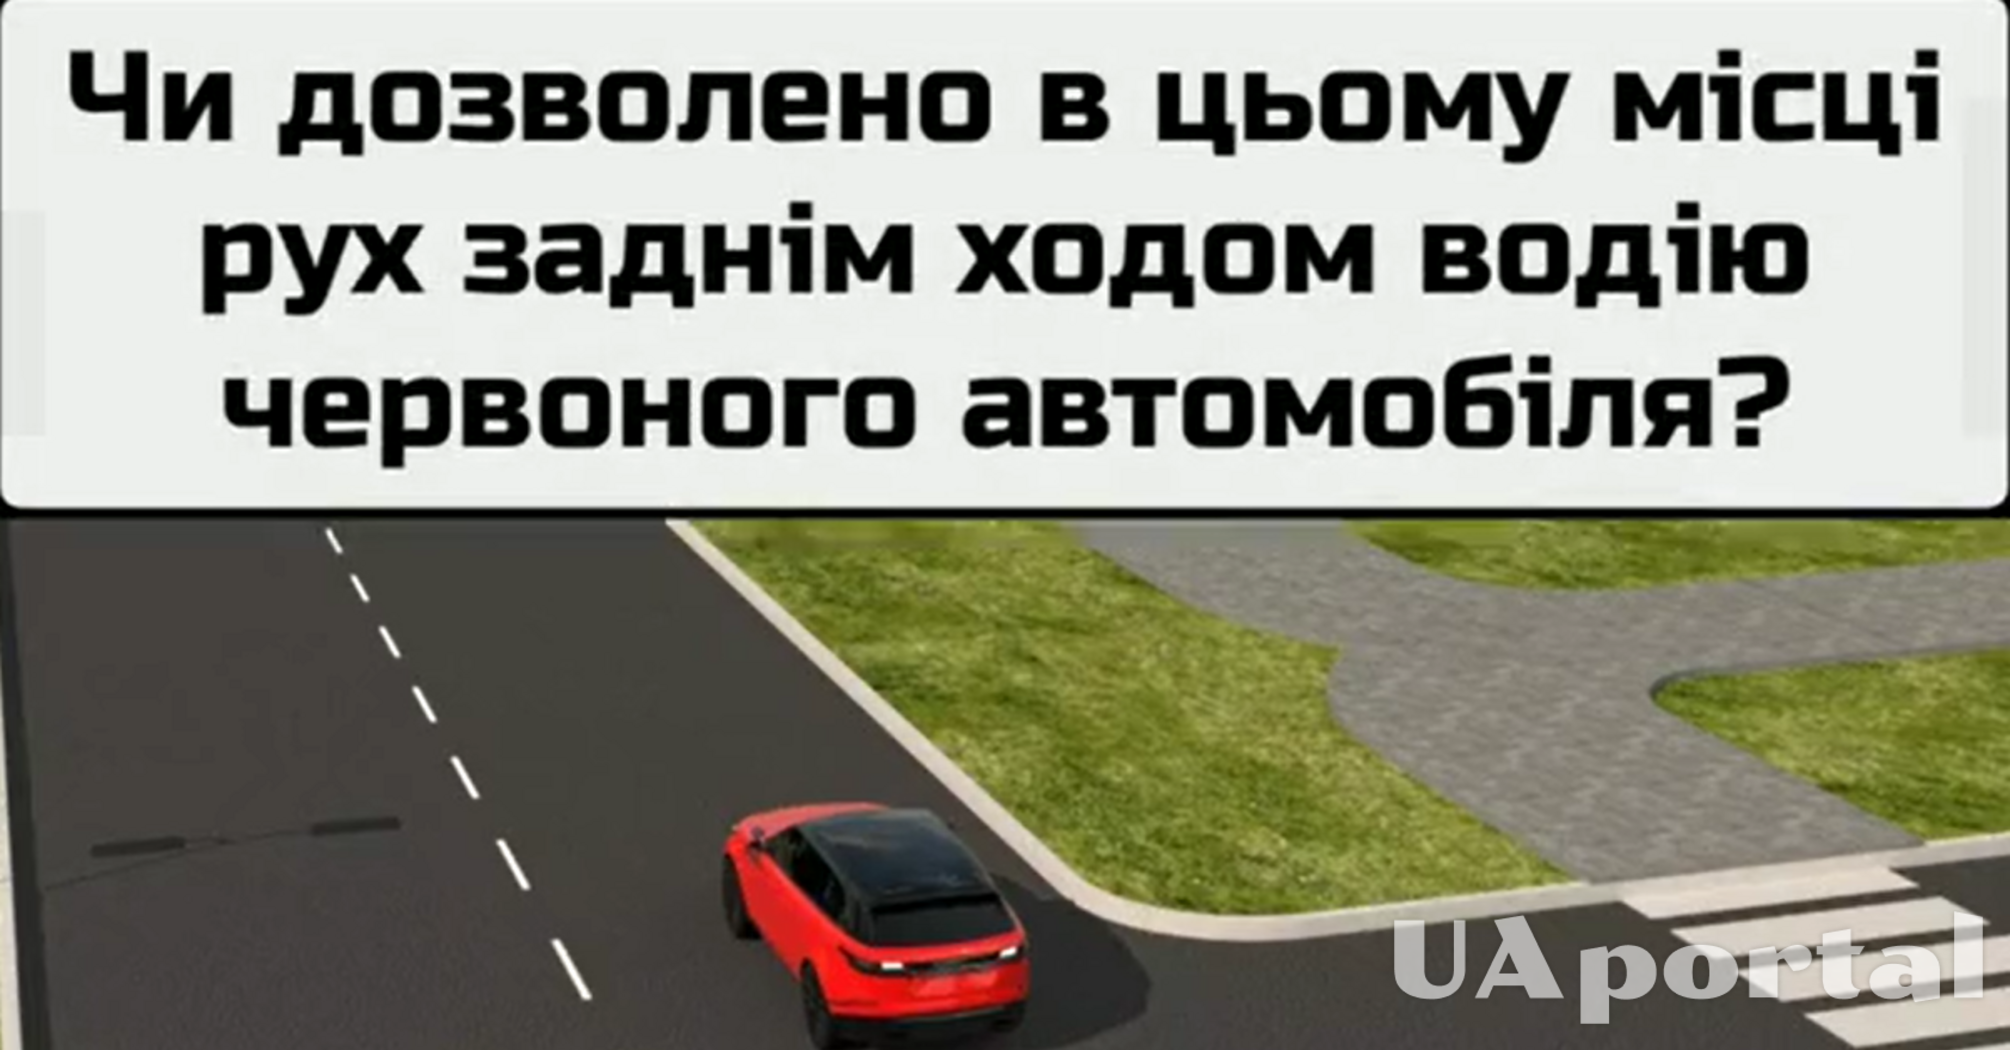 Чи дозволено водію червоного авто у цьому випадку дати задній хід: задача на знання ПДР (відео)